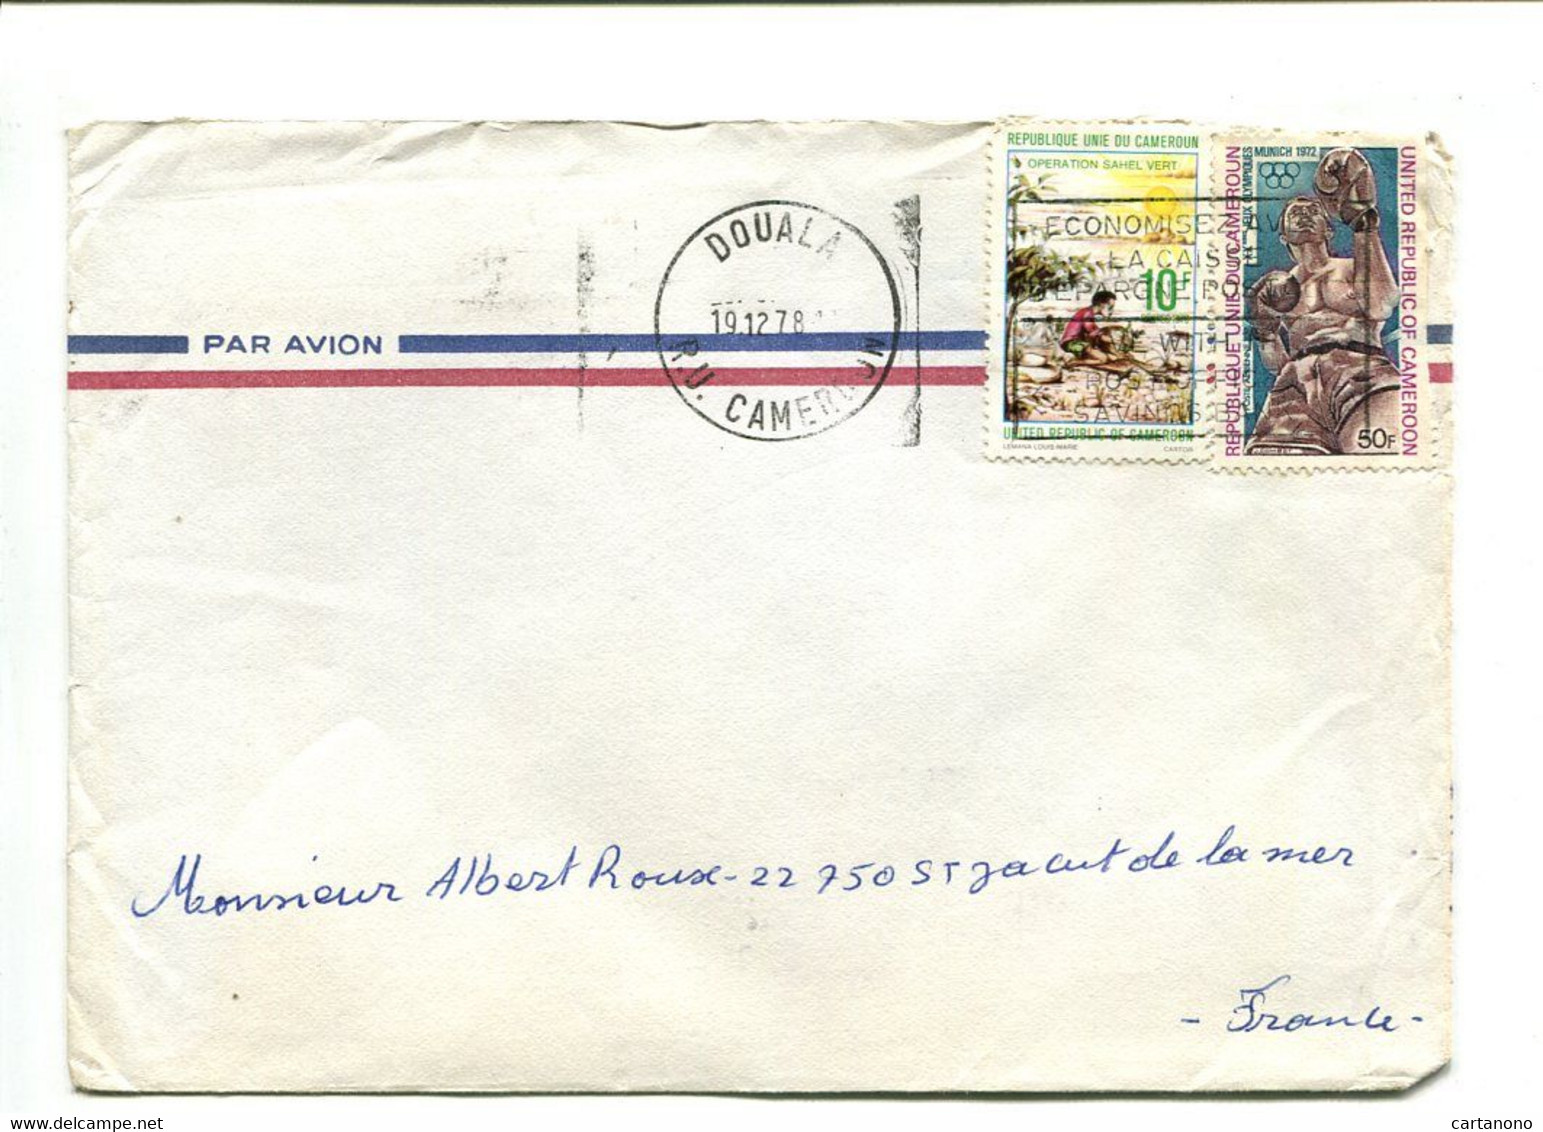 CAMEROUN Yaounde 1979 - Affranchissement Sur Lettre Par Avion - - Cameroun (1960-...)